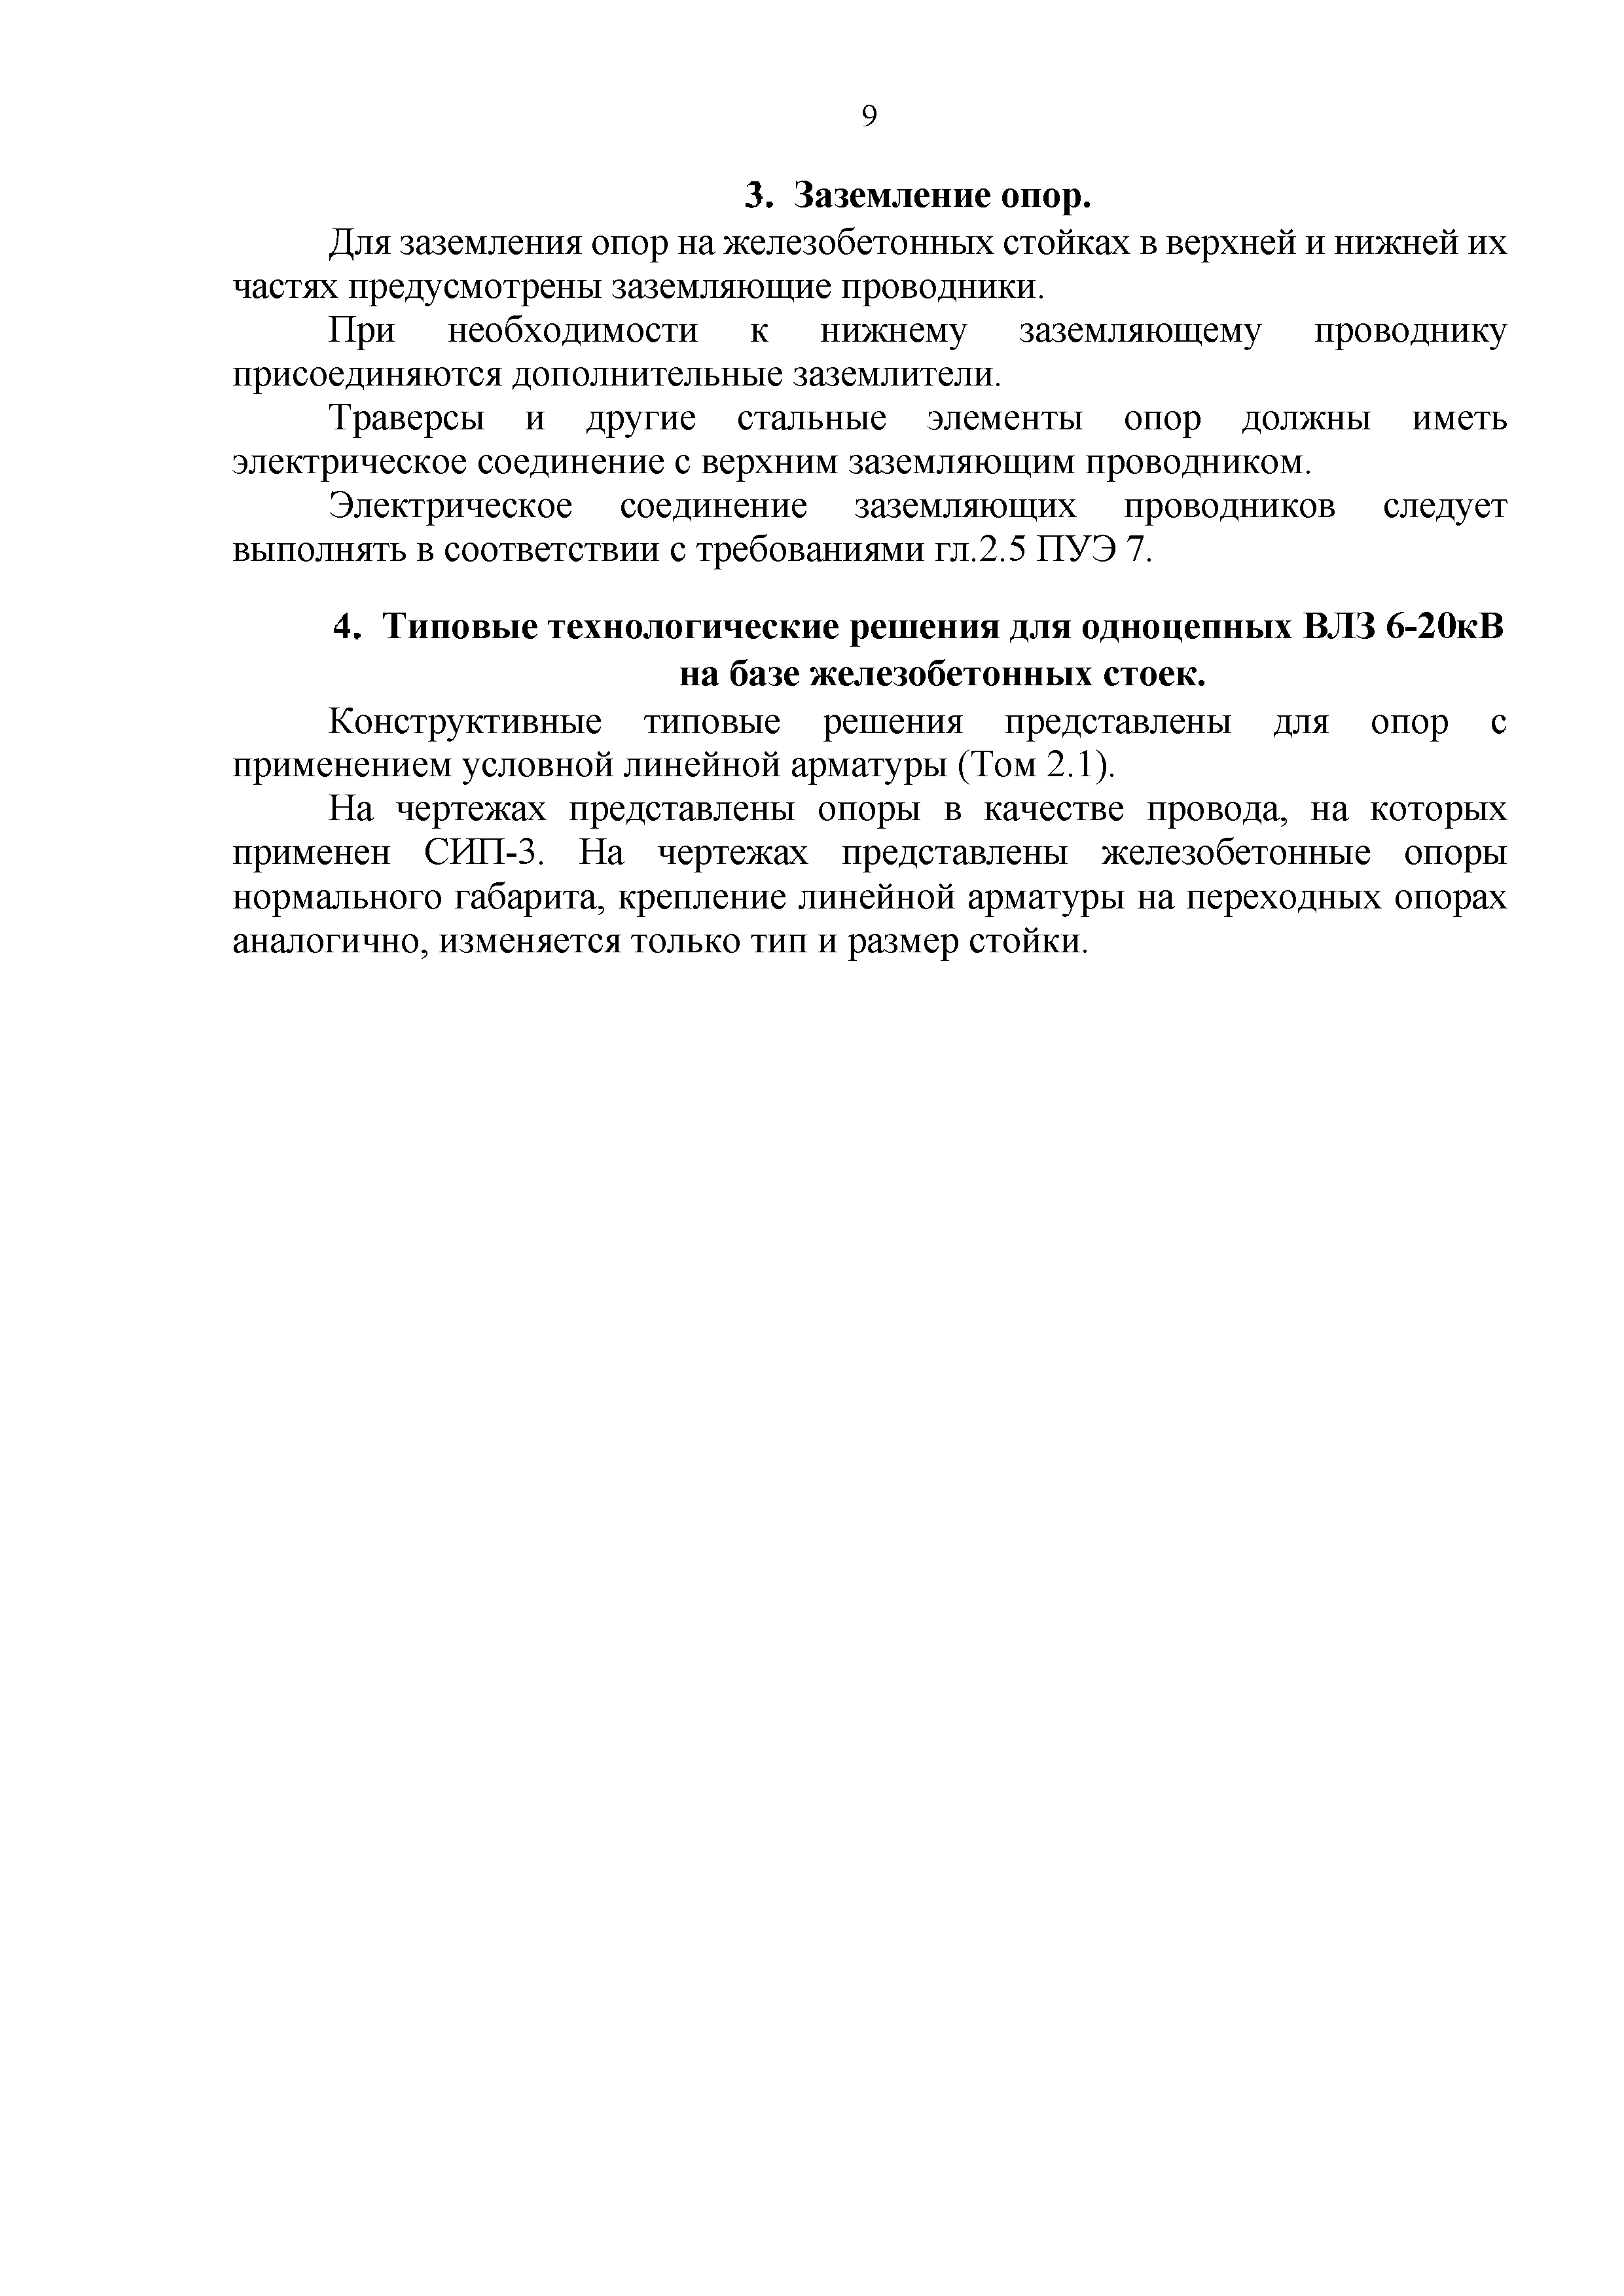 СТО 34.01-2.2-028-2017